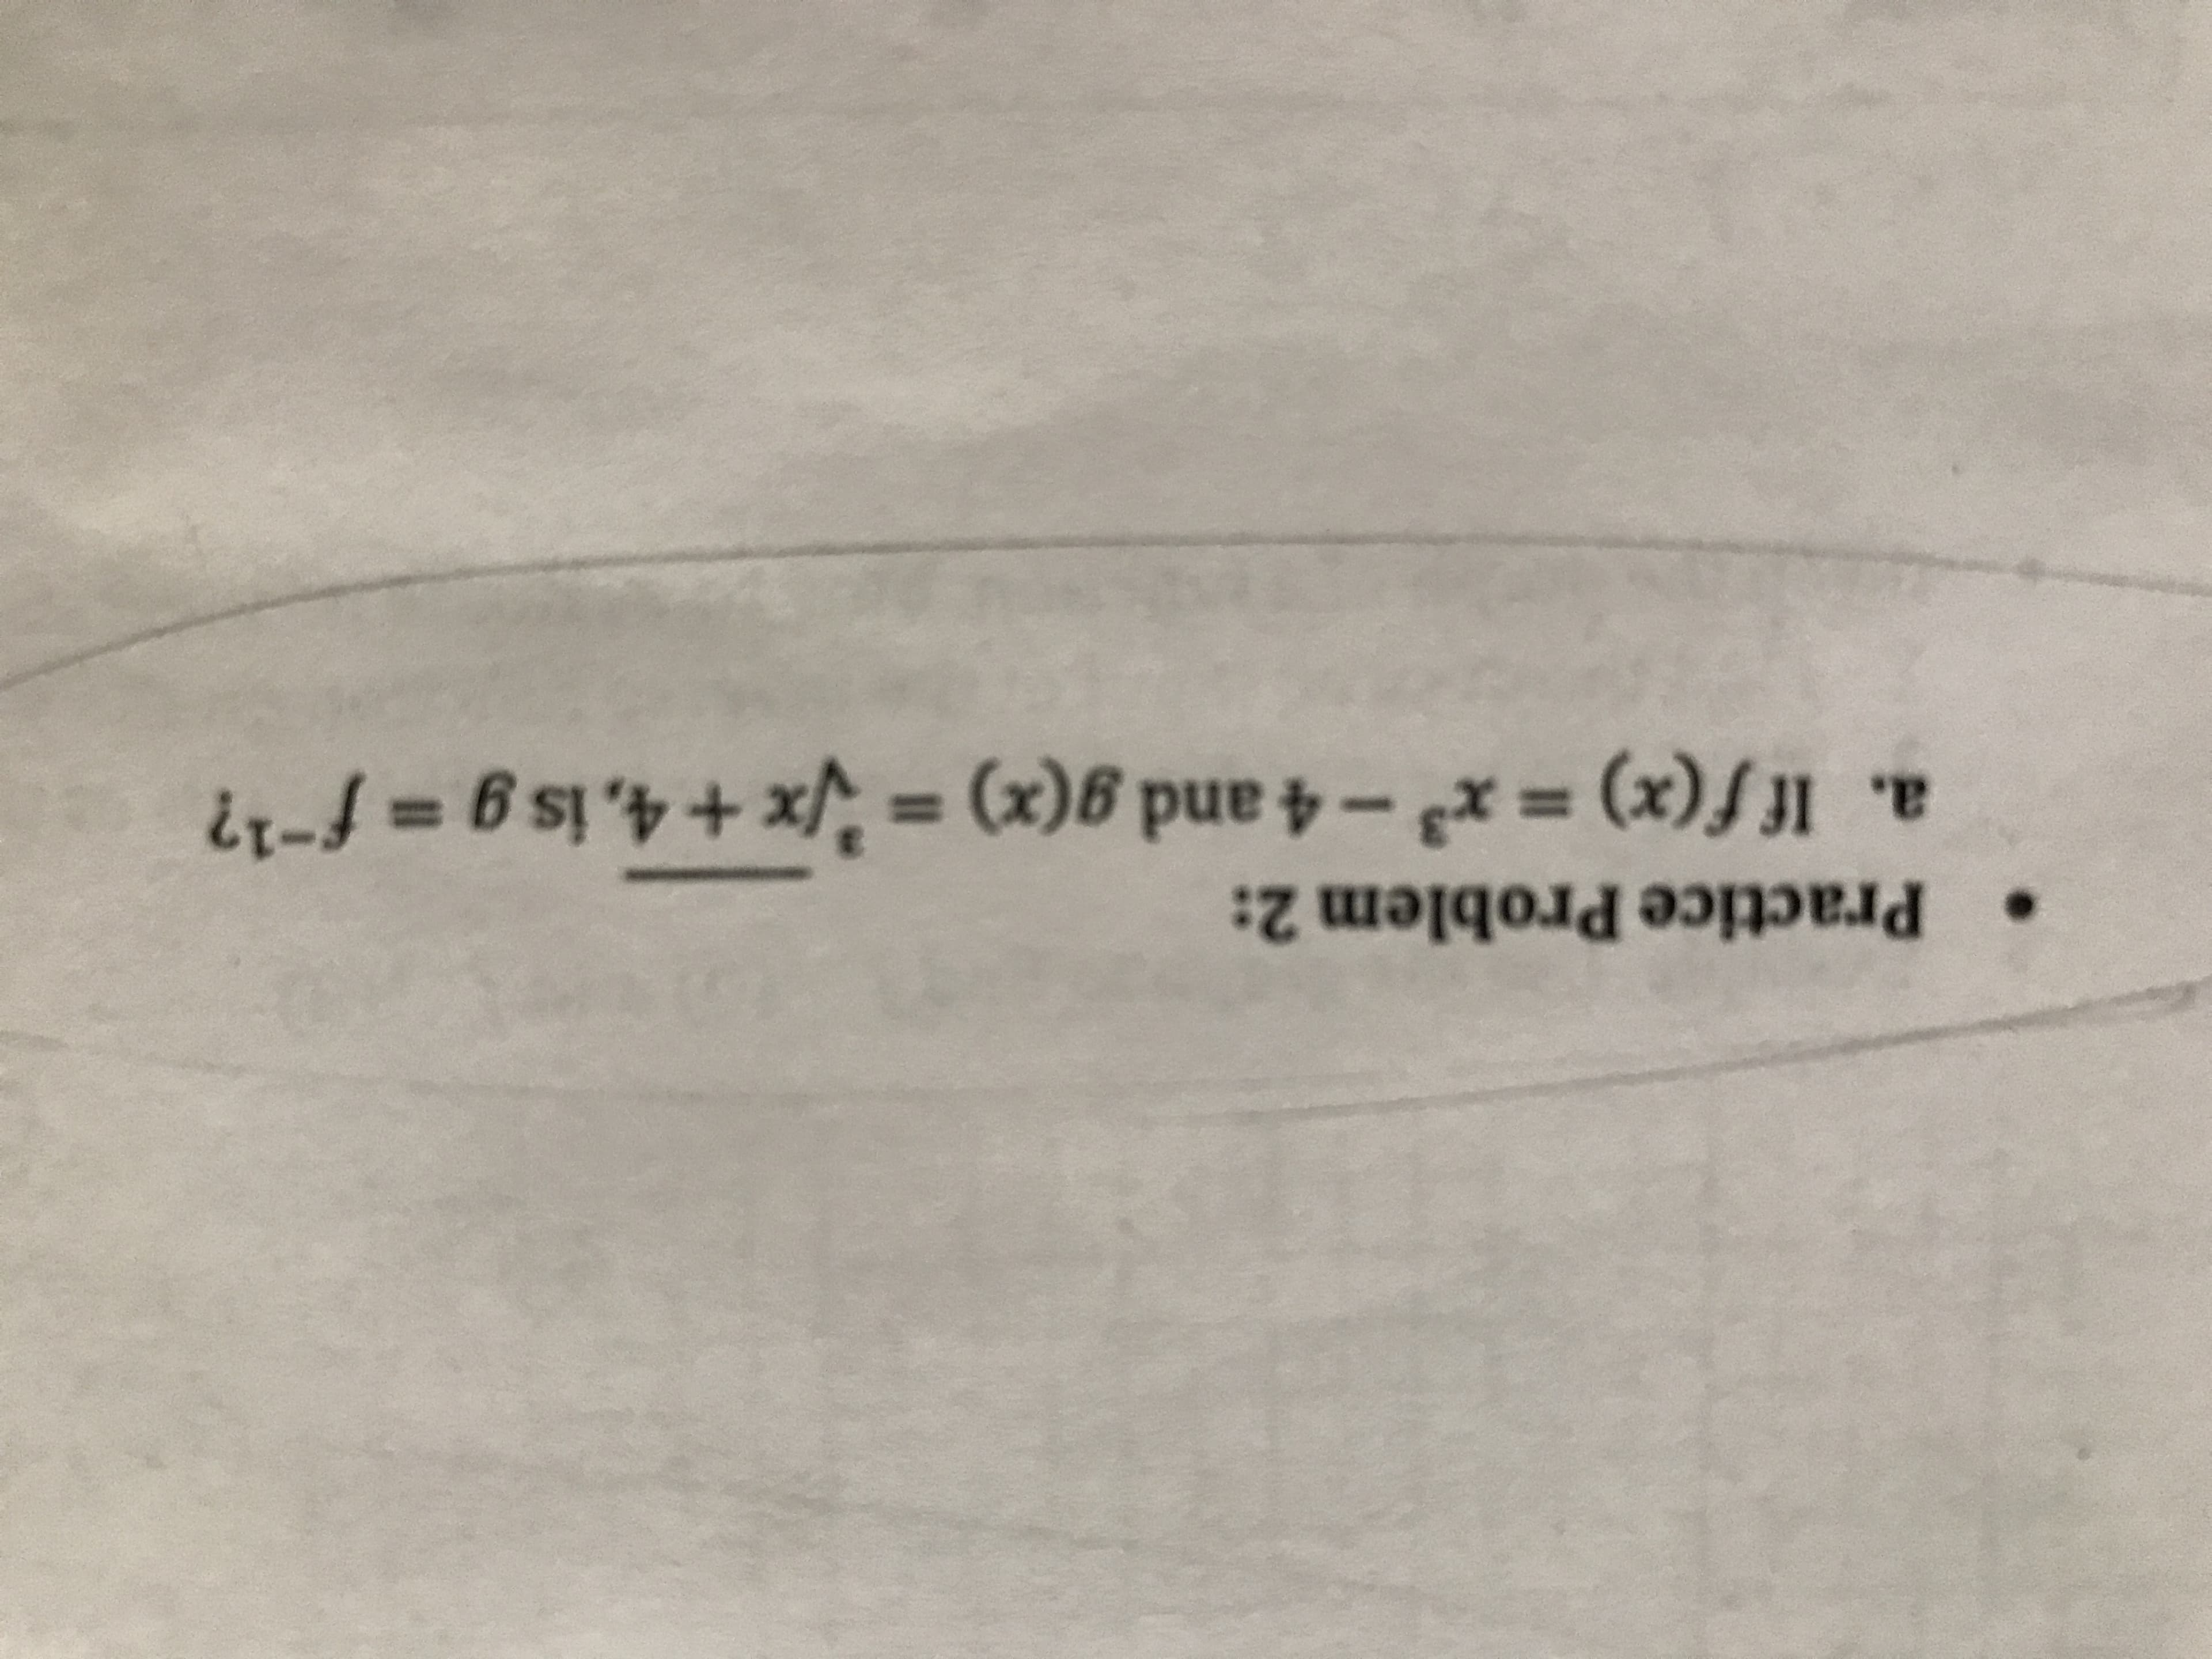 Practice Problem 2:
If f(x) x3-4 and g(x) = x
(x)J1
+4, is g f-1?
